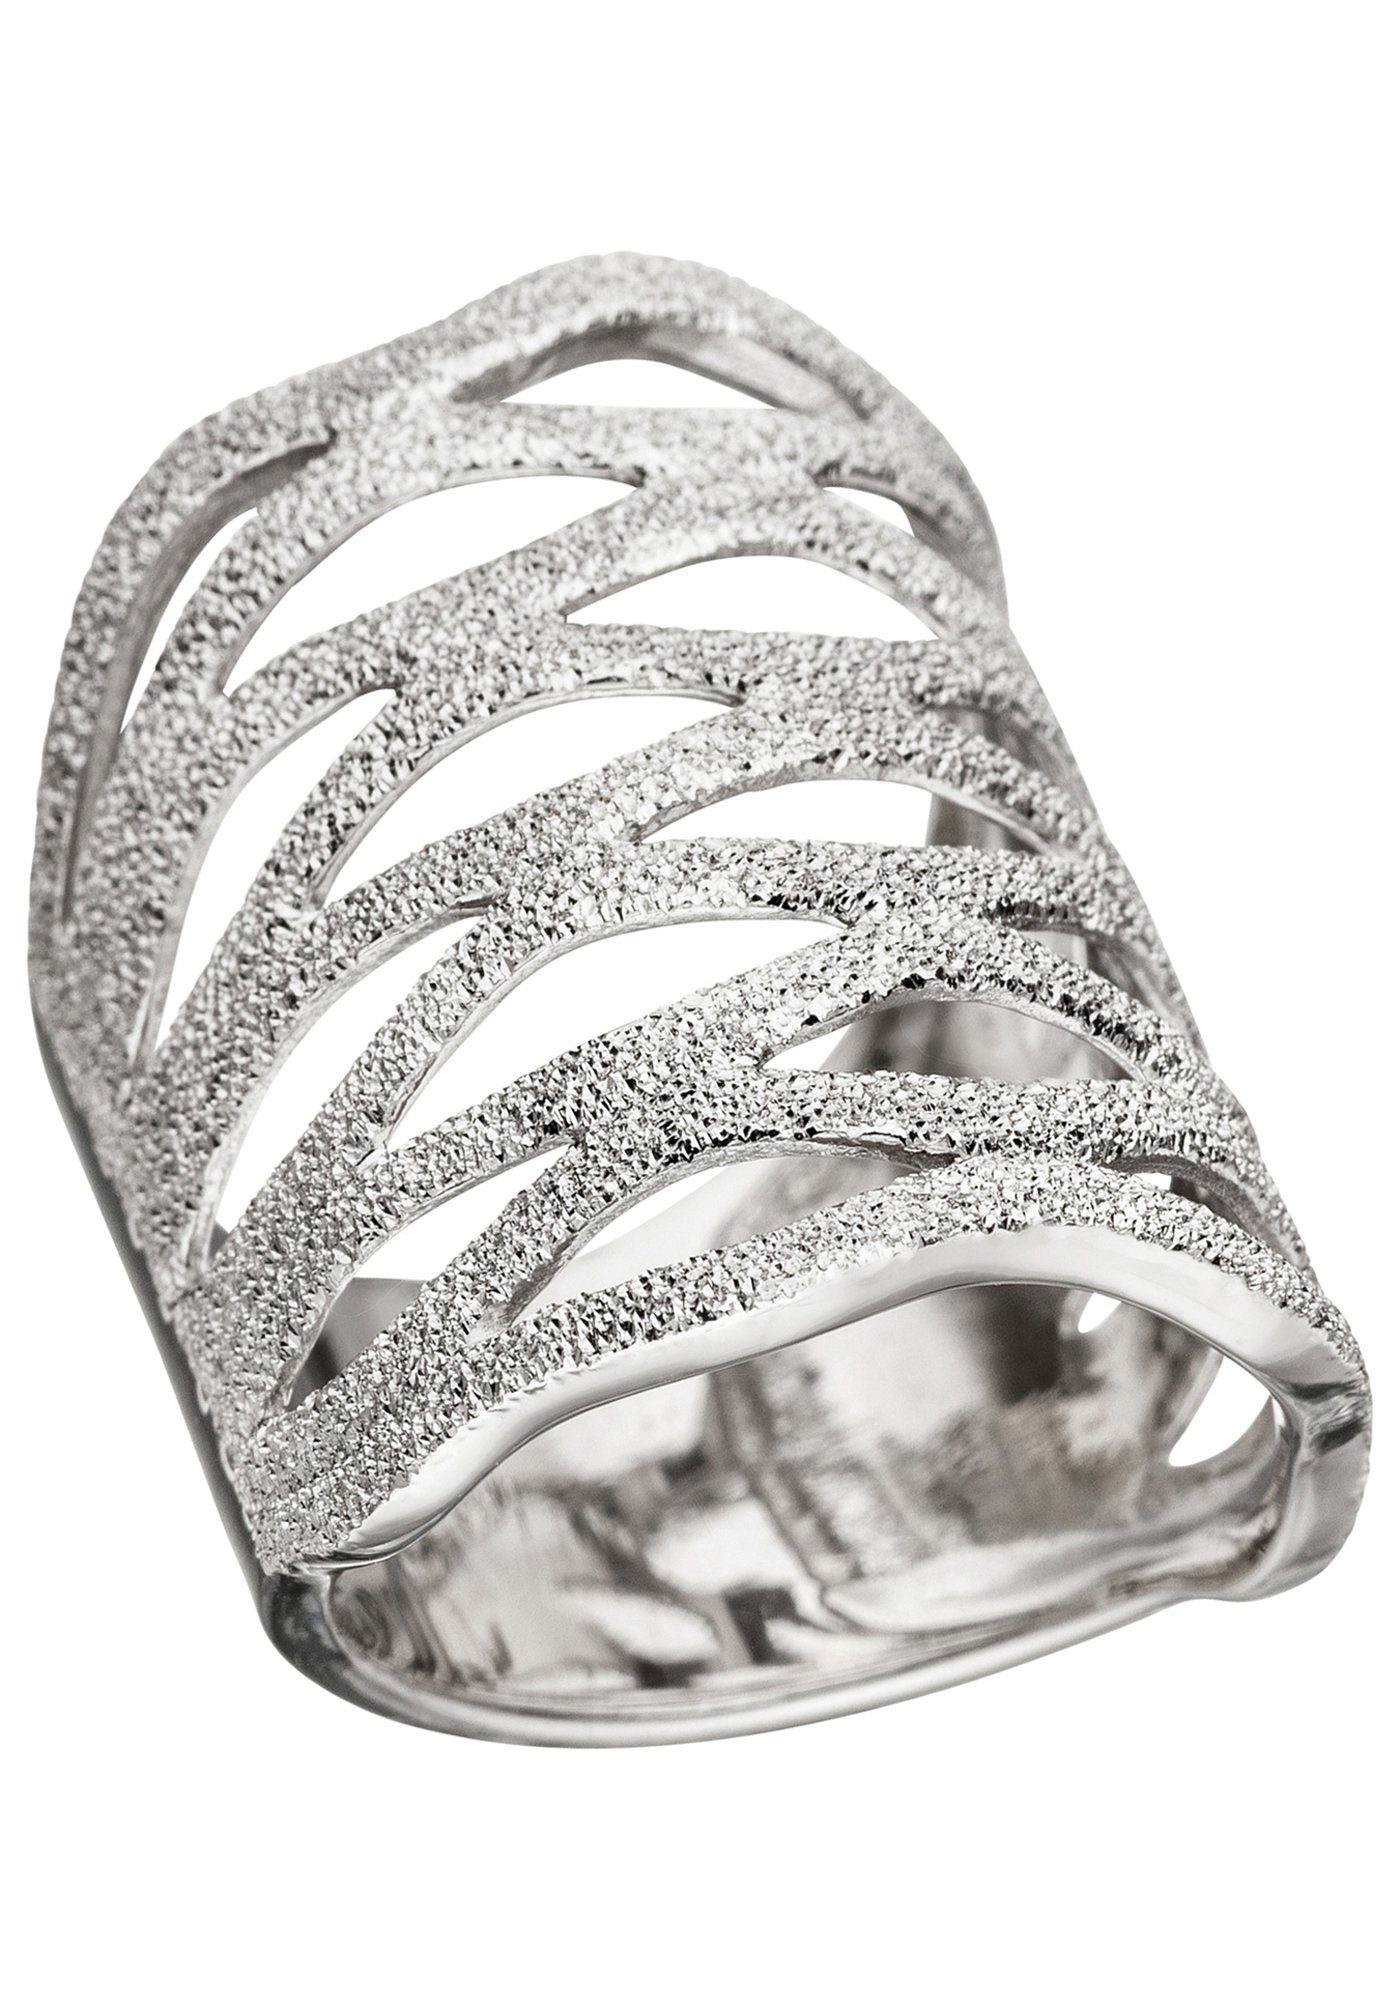 JOBO Silberring, Silber, 925 breit auffälliger Mit Oberflächenstruktur